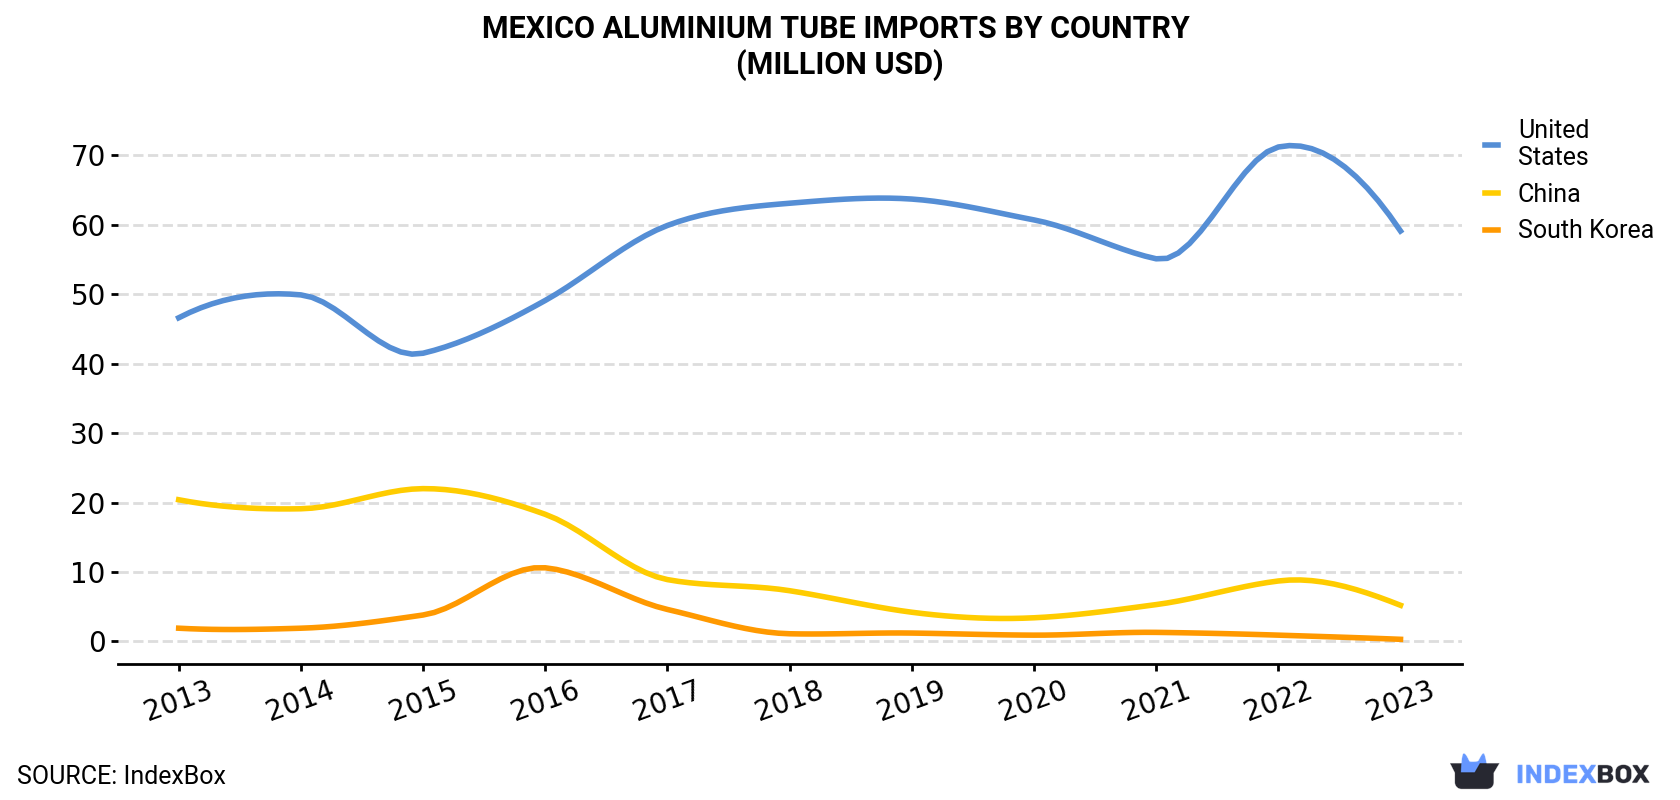 Mexico Aluminium Tube Imports By Country (Million USD)